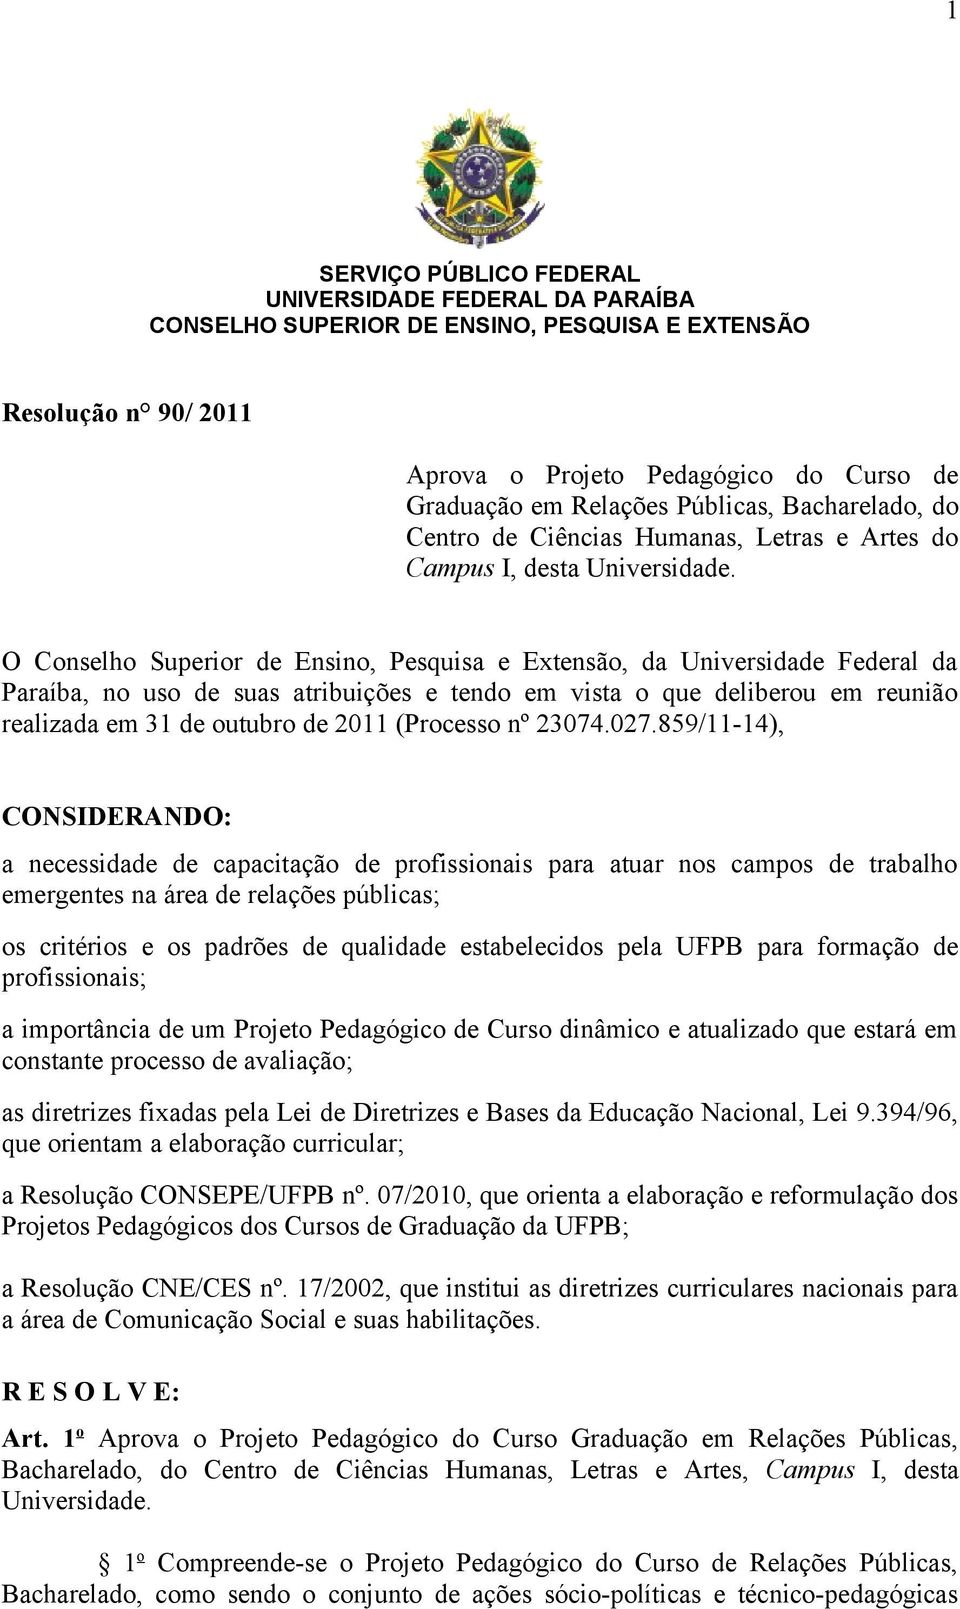 O Conselho Superior de Ensino, Pesquisa e Extensão, da Universidade Federal da Paraíba, no uso de suas atribuições e tendo em vista o que deliberou em reunião realizada em 31 de outubro de 2011